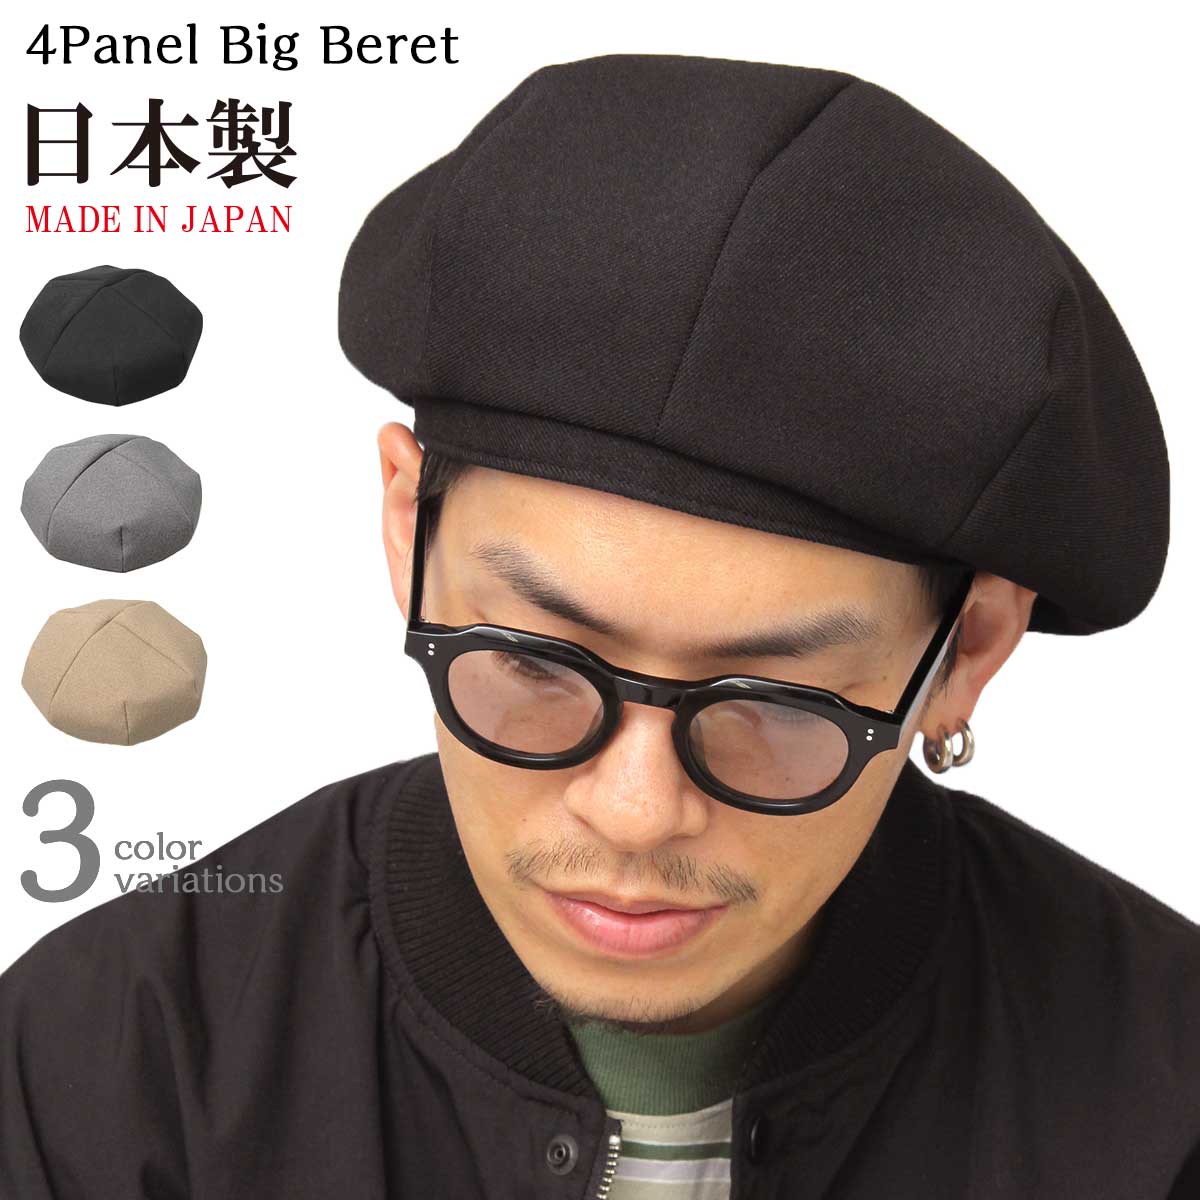 ベレー帽 帽子 ハット キャスケット メンズ ユニセックス ビッグベレー 大きめ 日本製 ボリューミー ビッグシルエット ミニマル シンプル コンパクト Mr.COVER ミスターカバー